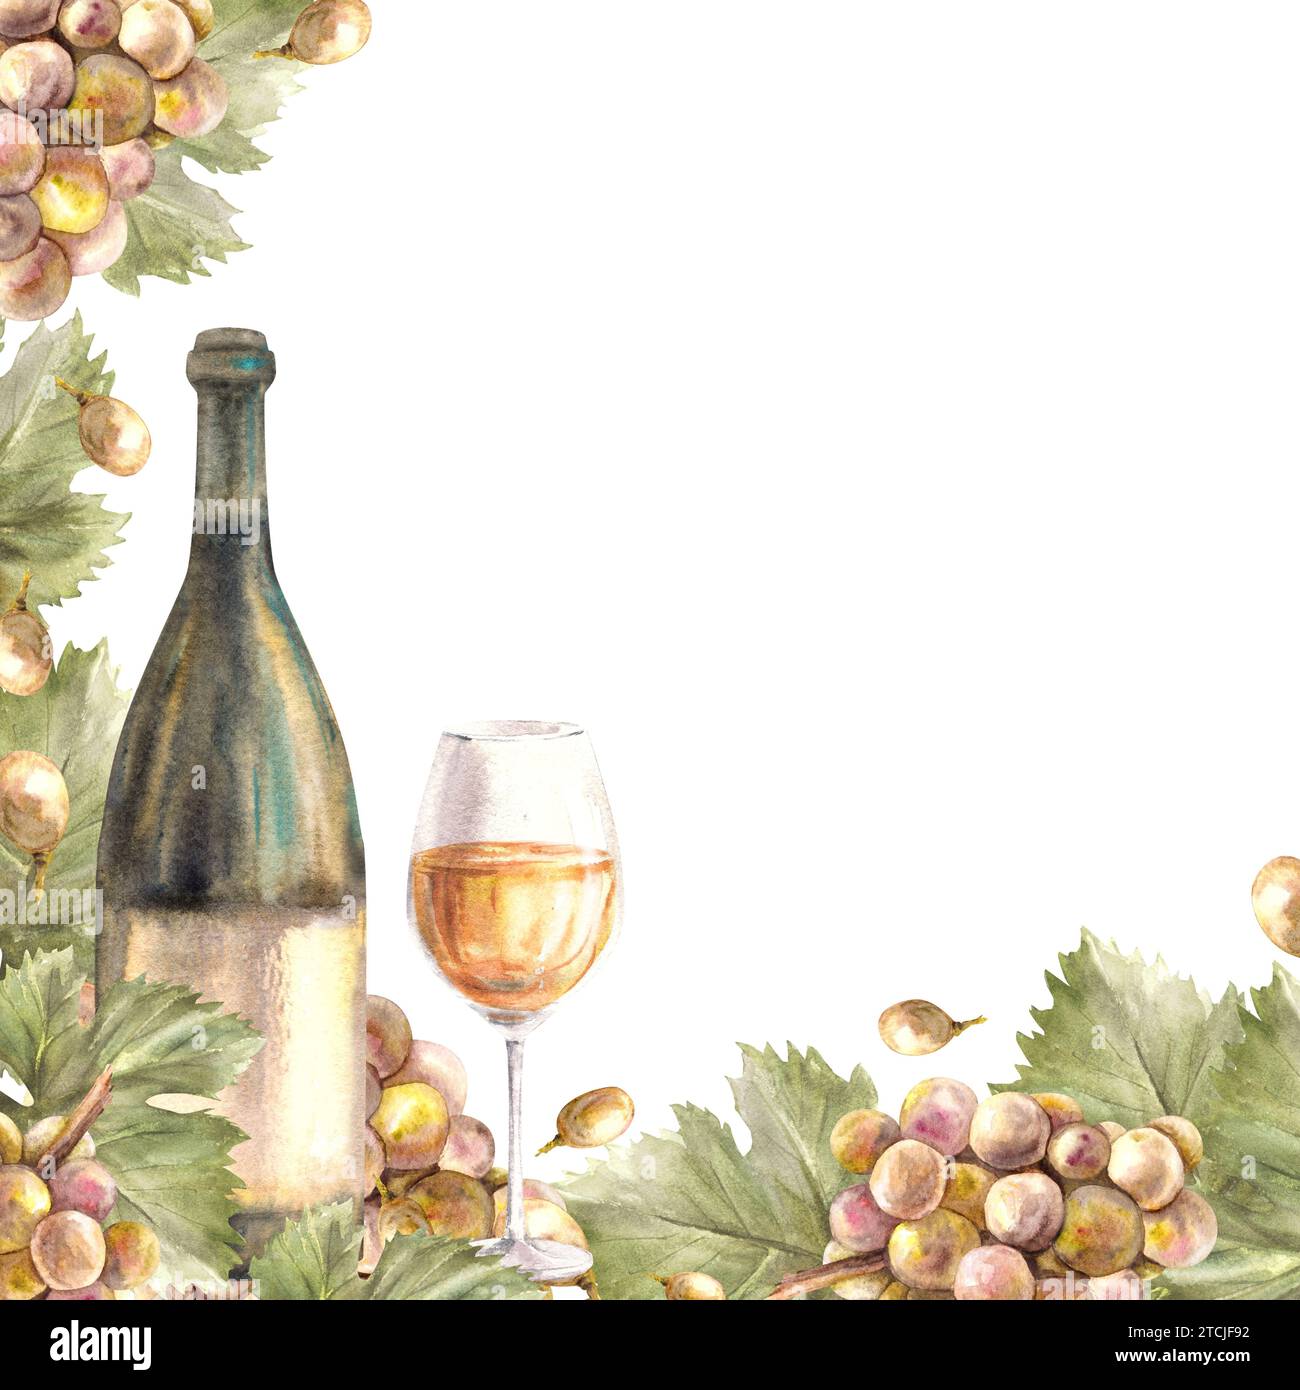 Bouquet de cadre aquarelle de raisins verts, feuilles et baies de raisin avec verre et bouteille de vin blanc étiquette Grapevine illustration peinte à la main pour le vin Banque D'Images